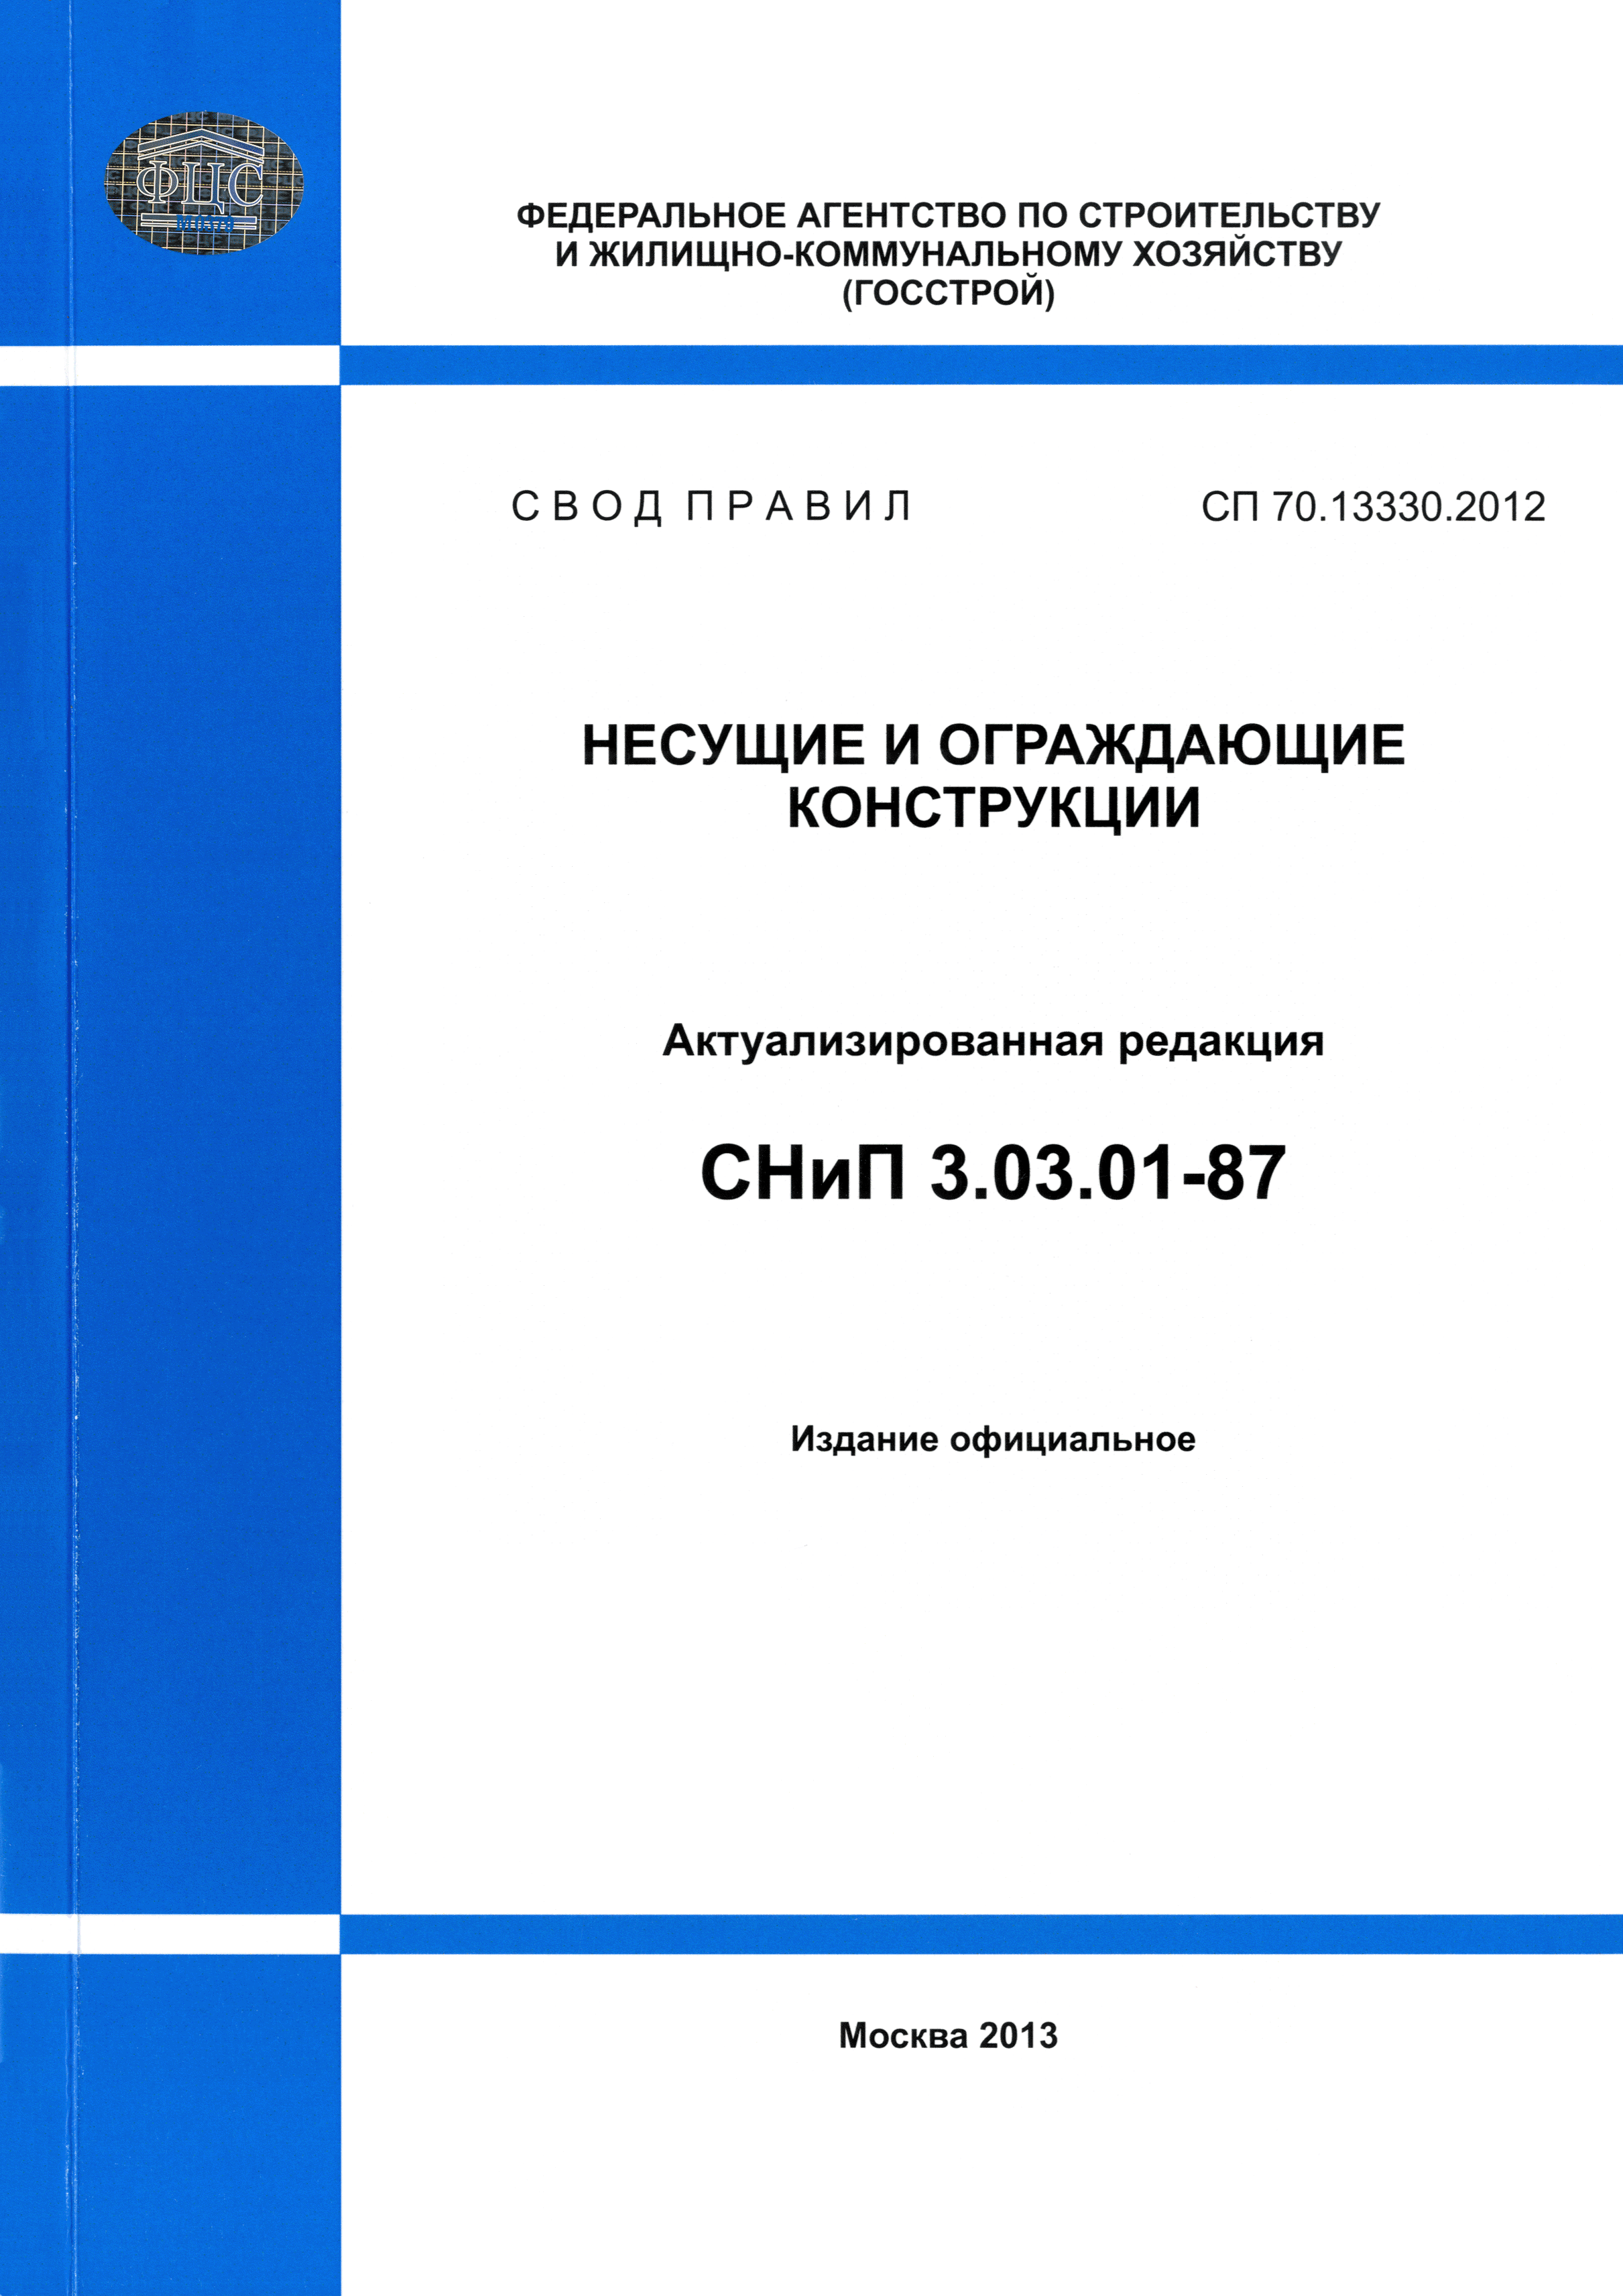 СП 70.13330.2012